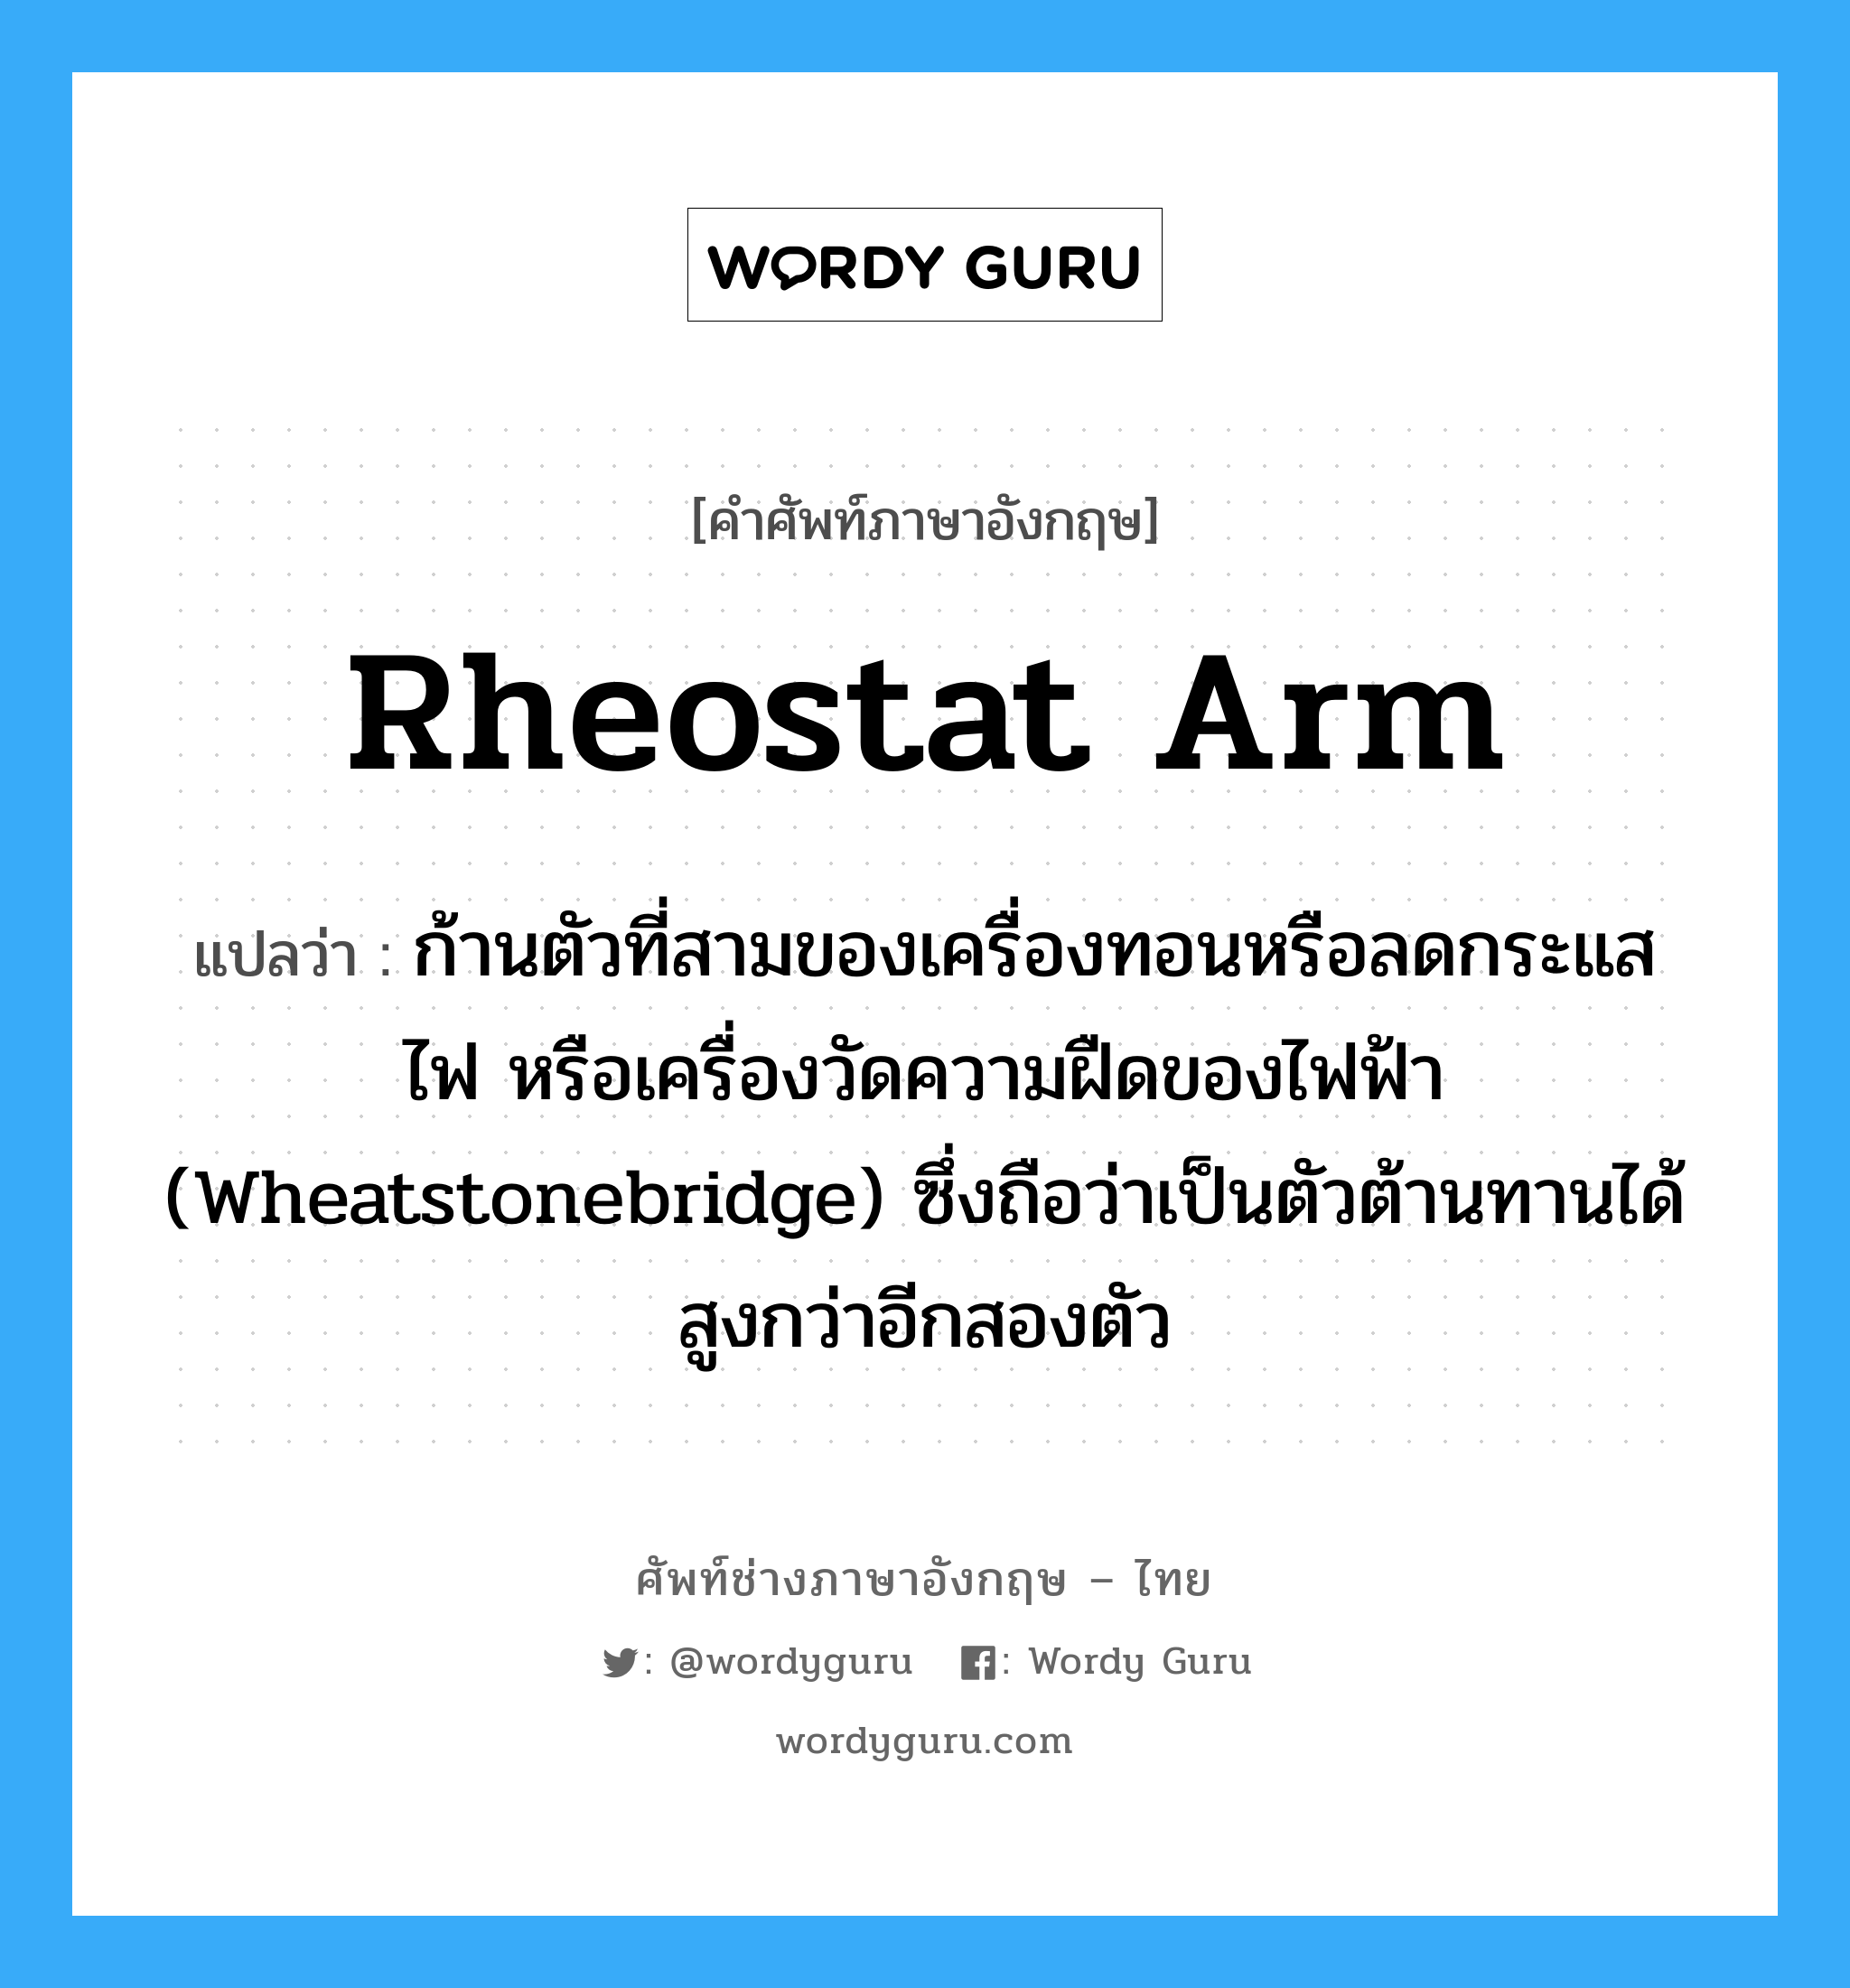 rheostat arm แปลว่า?, คำศัพท์ช่างภาษาอังกฤษ - ไทย rheostat arm คำศัพท์ภาษาอังกฤษ rheostat arm แปลว่า ก้านตัวที่สามของเครื่องทอนหรือลดกระแสไฟ หรือเครื่องวัดความฝืดของไฟฟ้า (Wheatstonebridge) ซึ่งถือว่าเป็นตัวต้านทานได้สูงกว่าอีกสองตัว